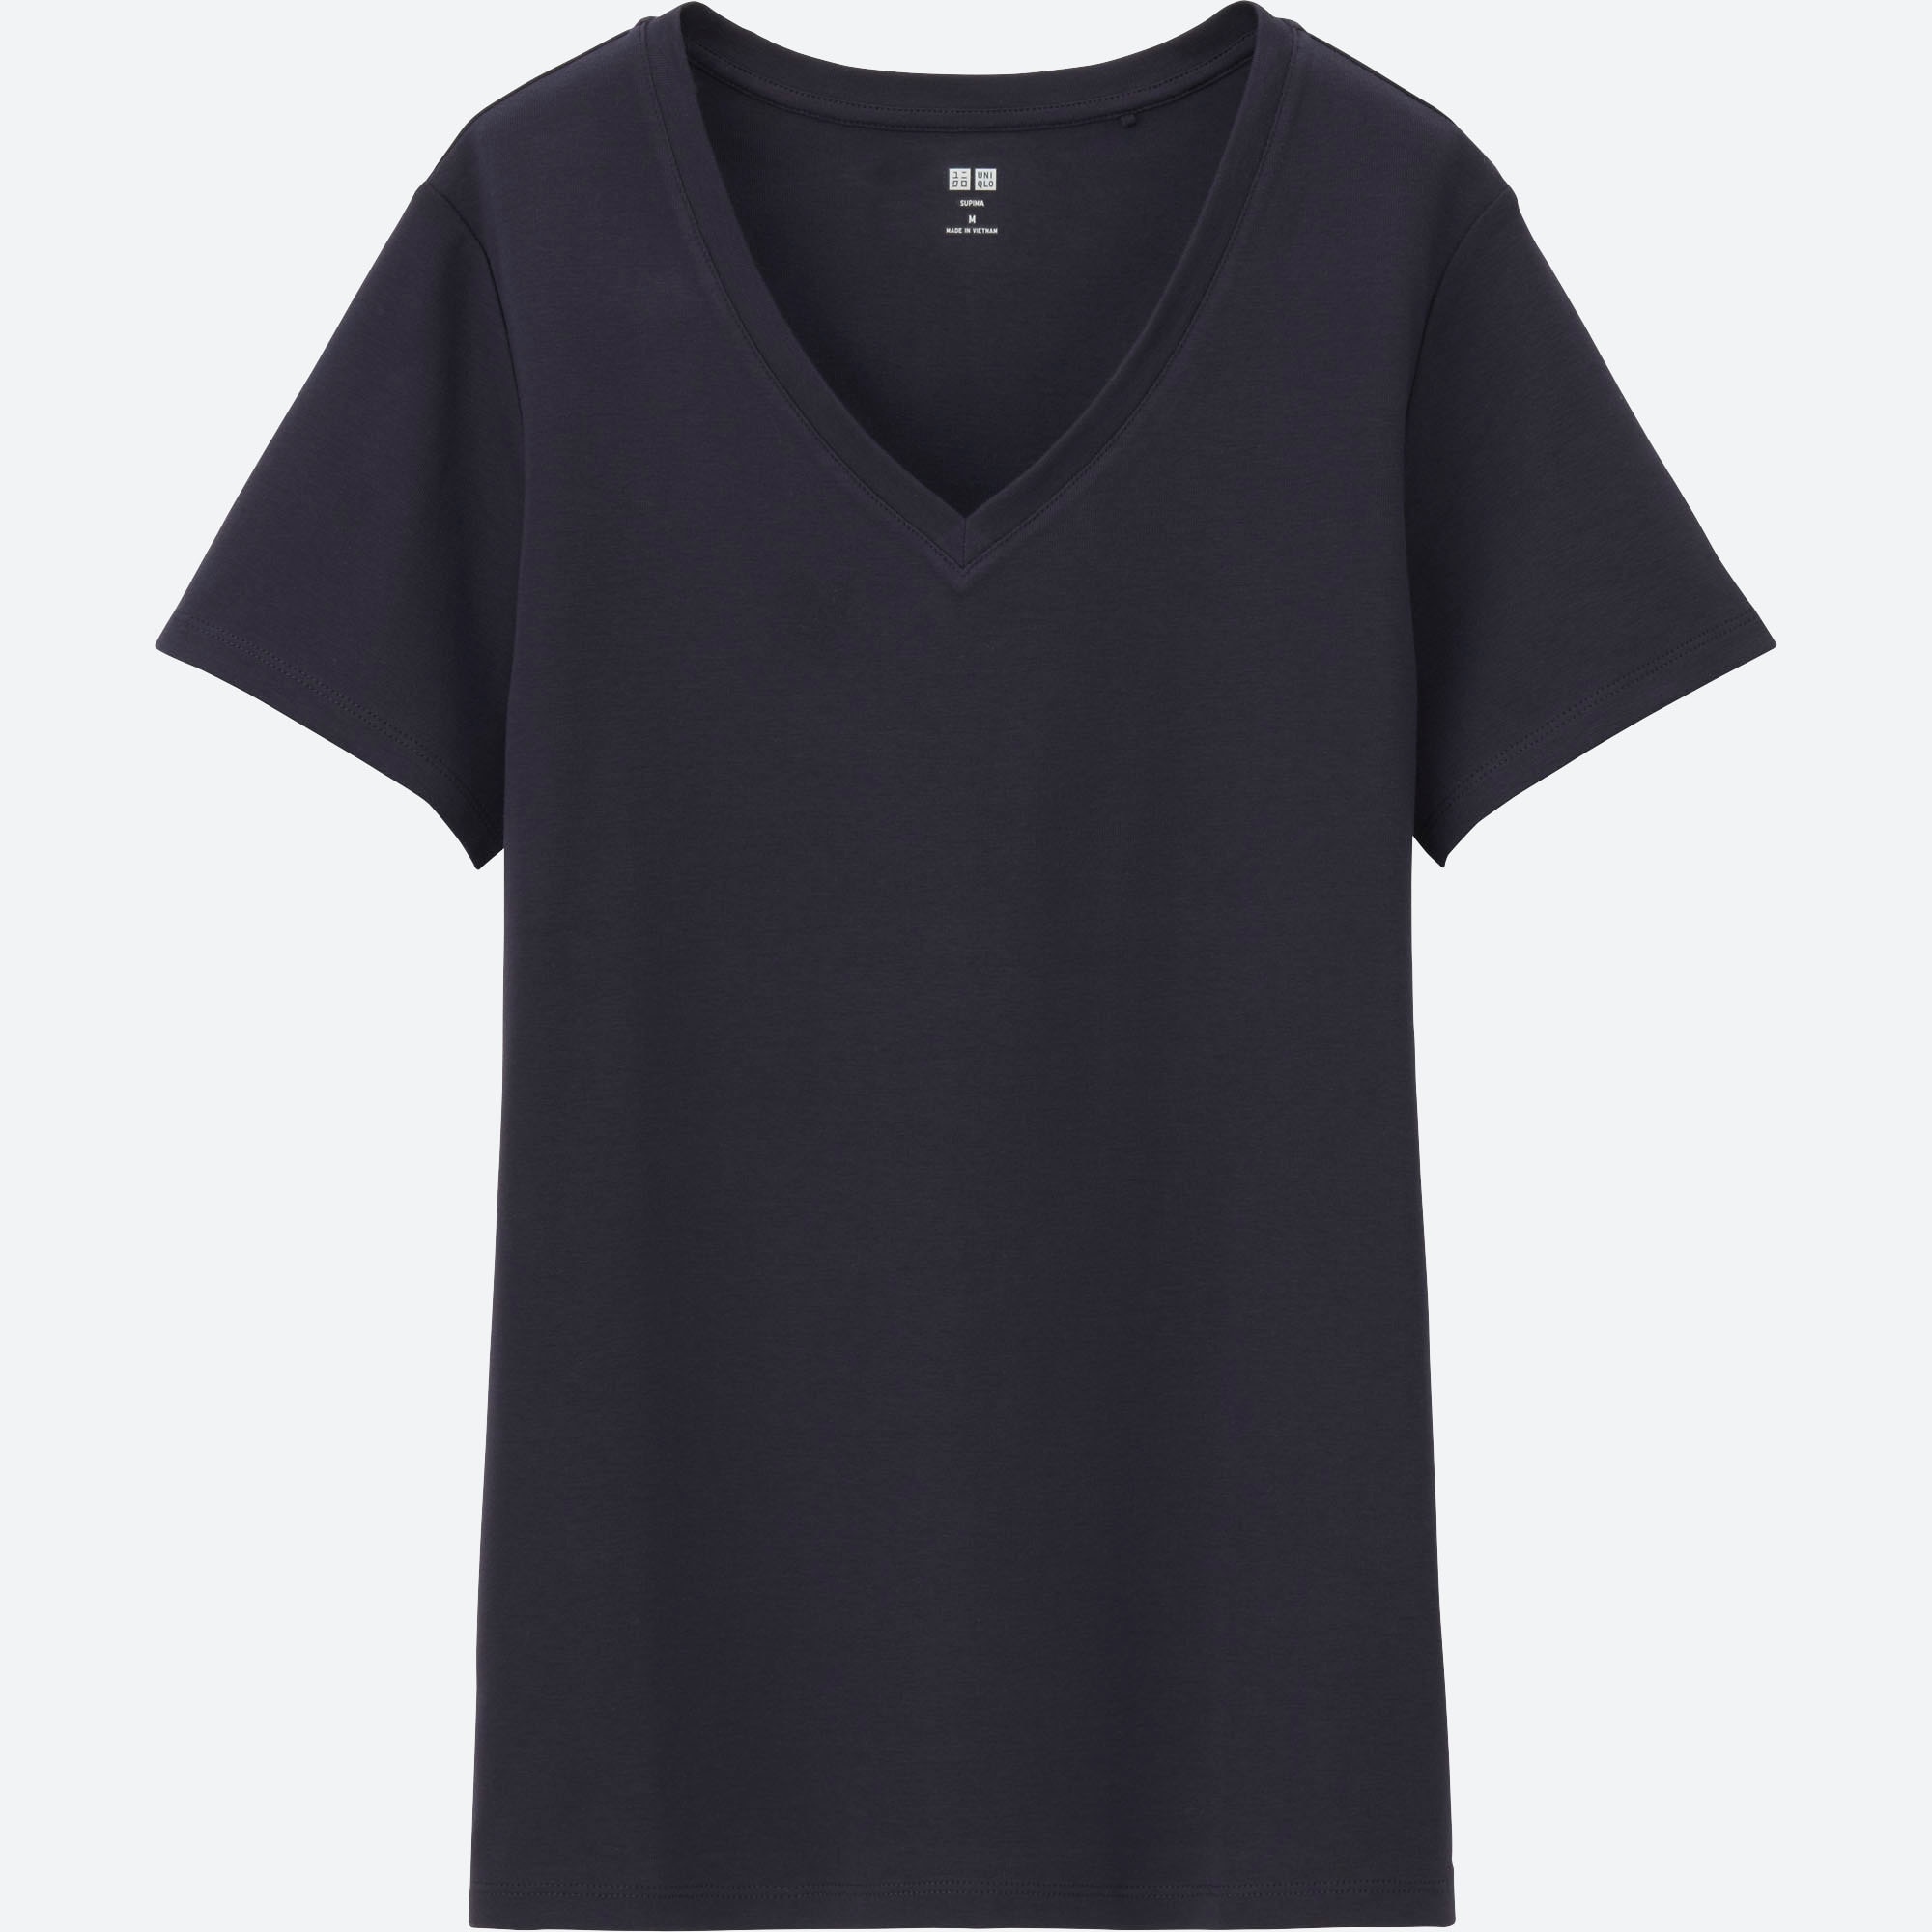 Black V Neck Tee Shirts Hotsell, 55% OFF | campingcanyelles.com